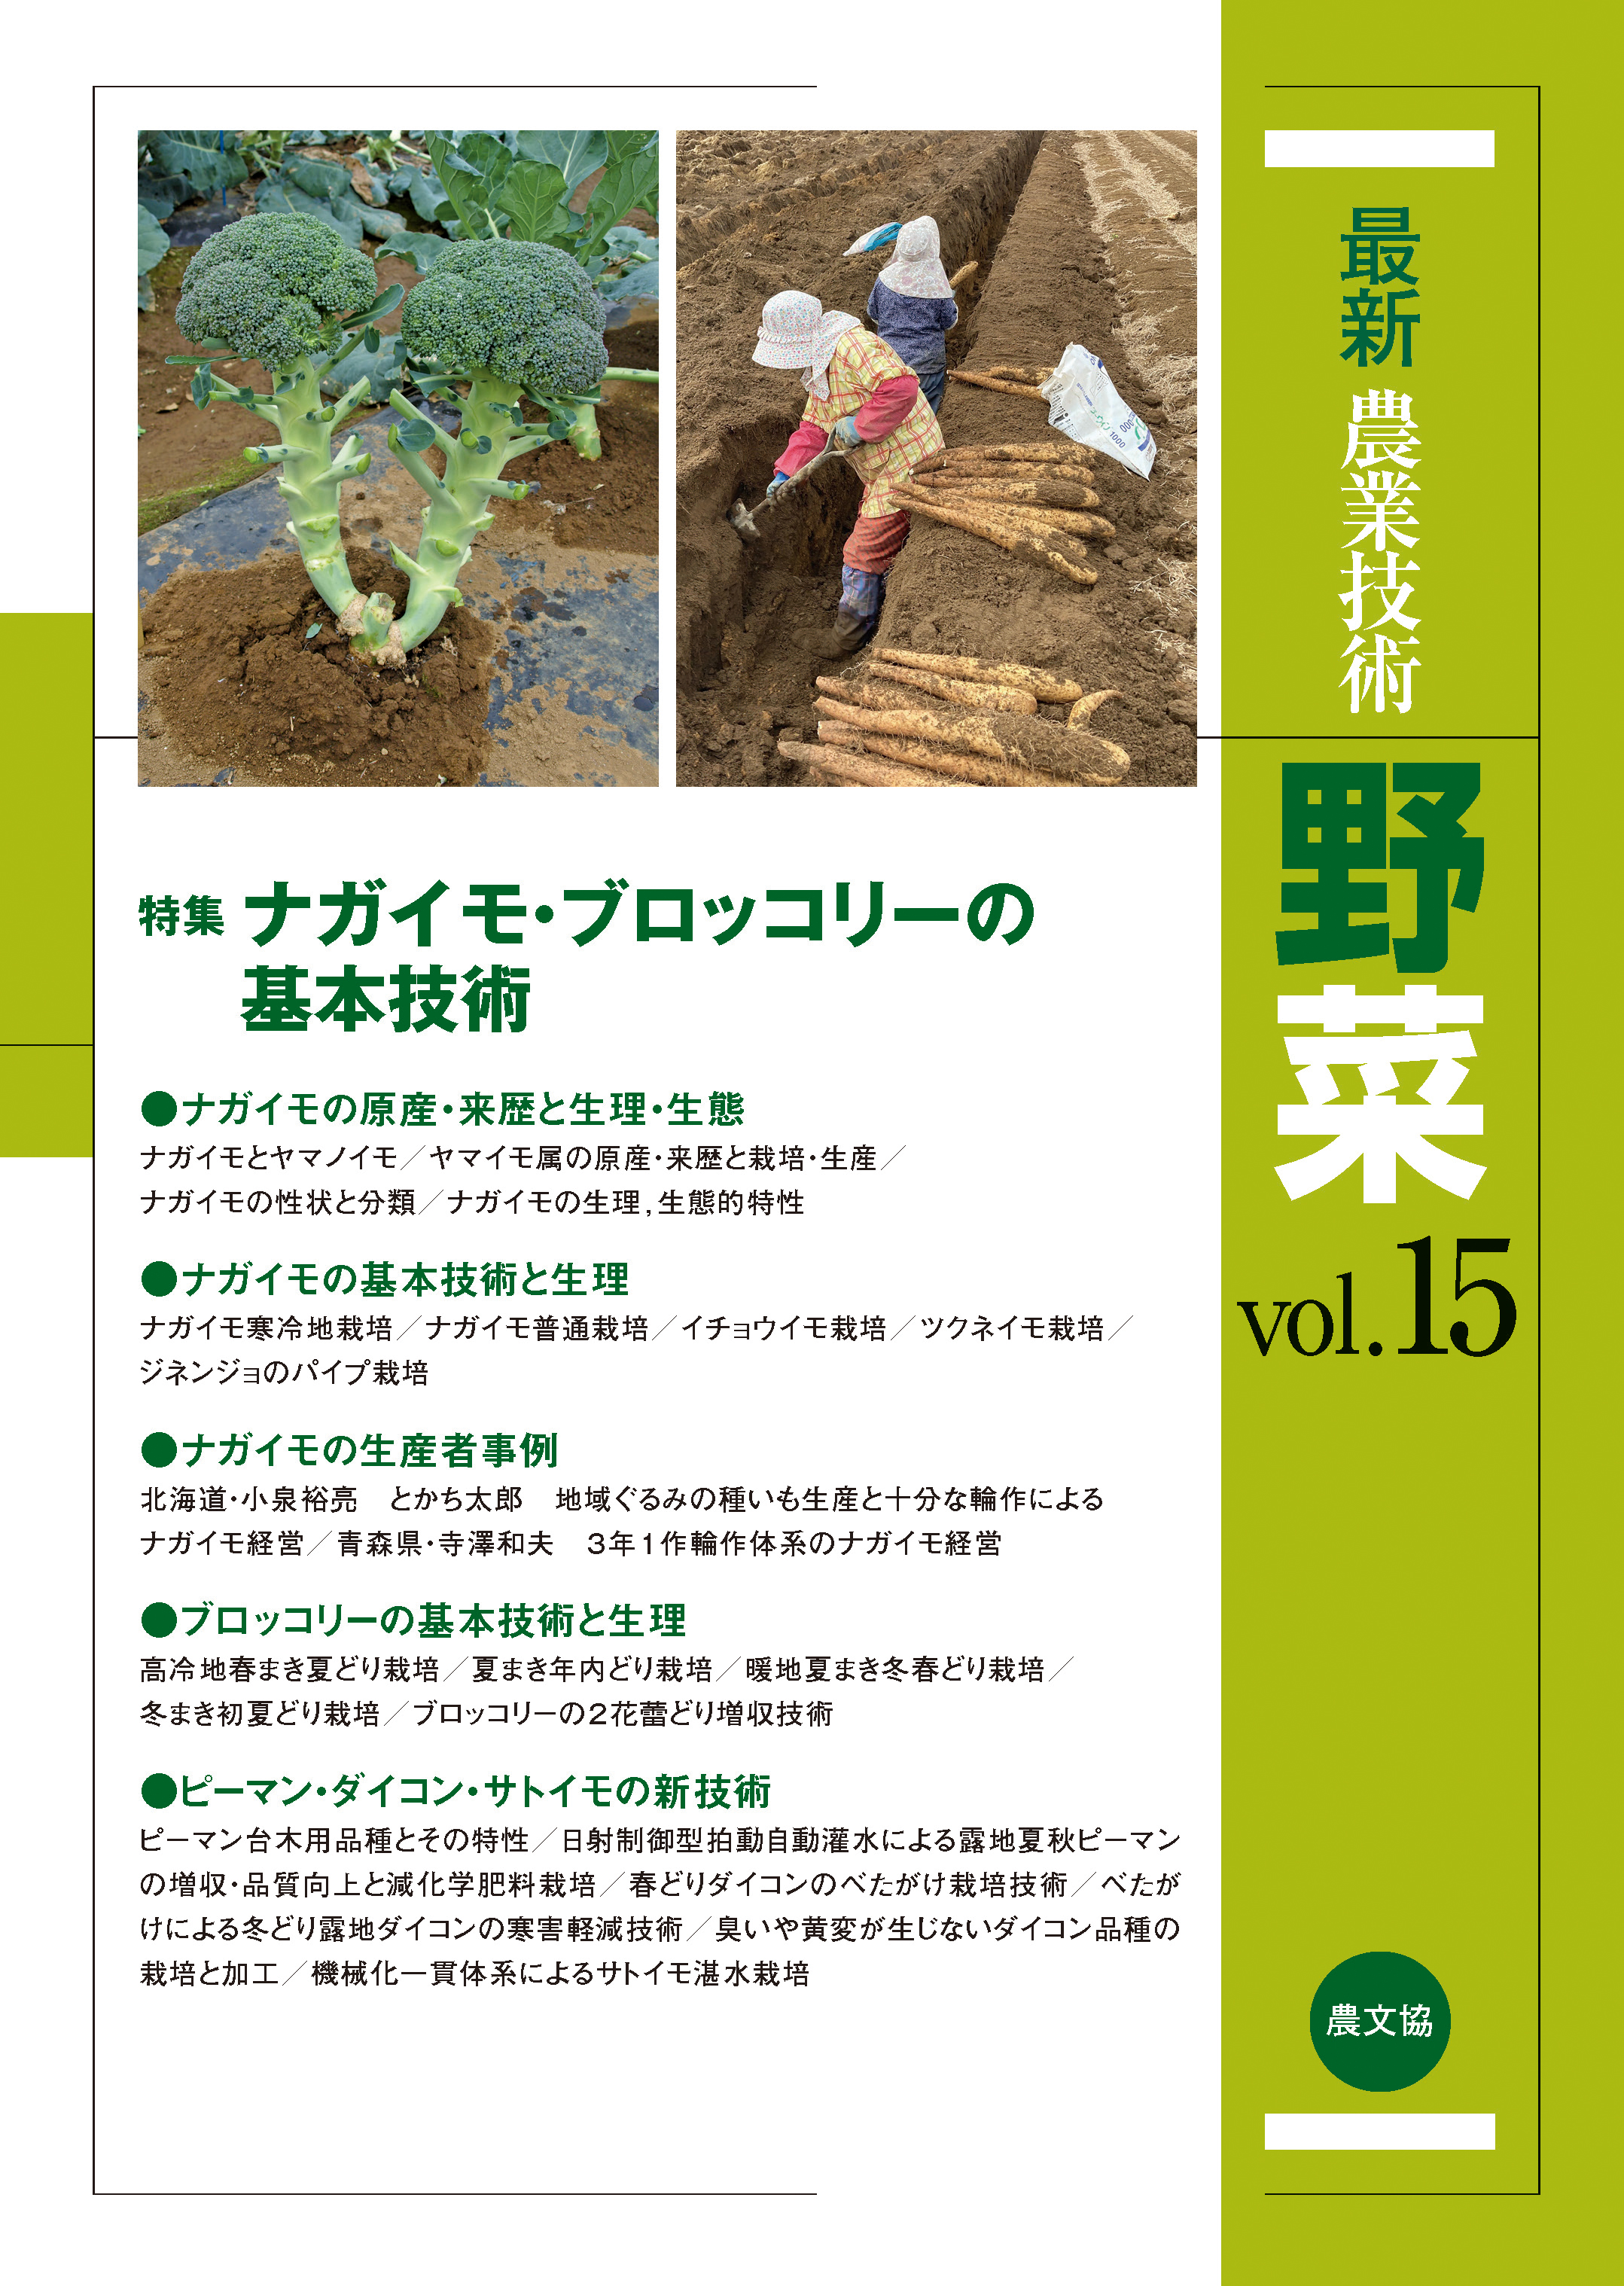 最新農業技術 野菜Vol.15 - 農文協 - 漫画・無料試し読みなら、電子